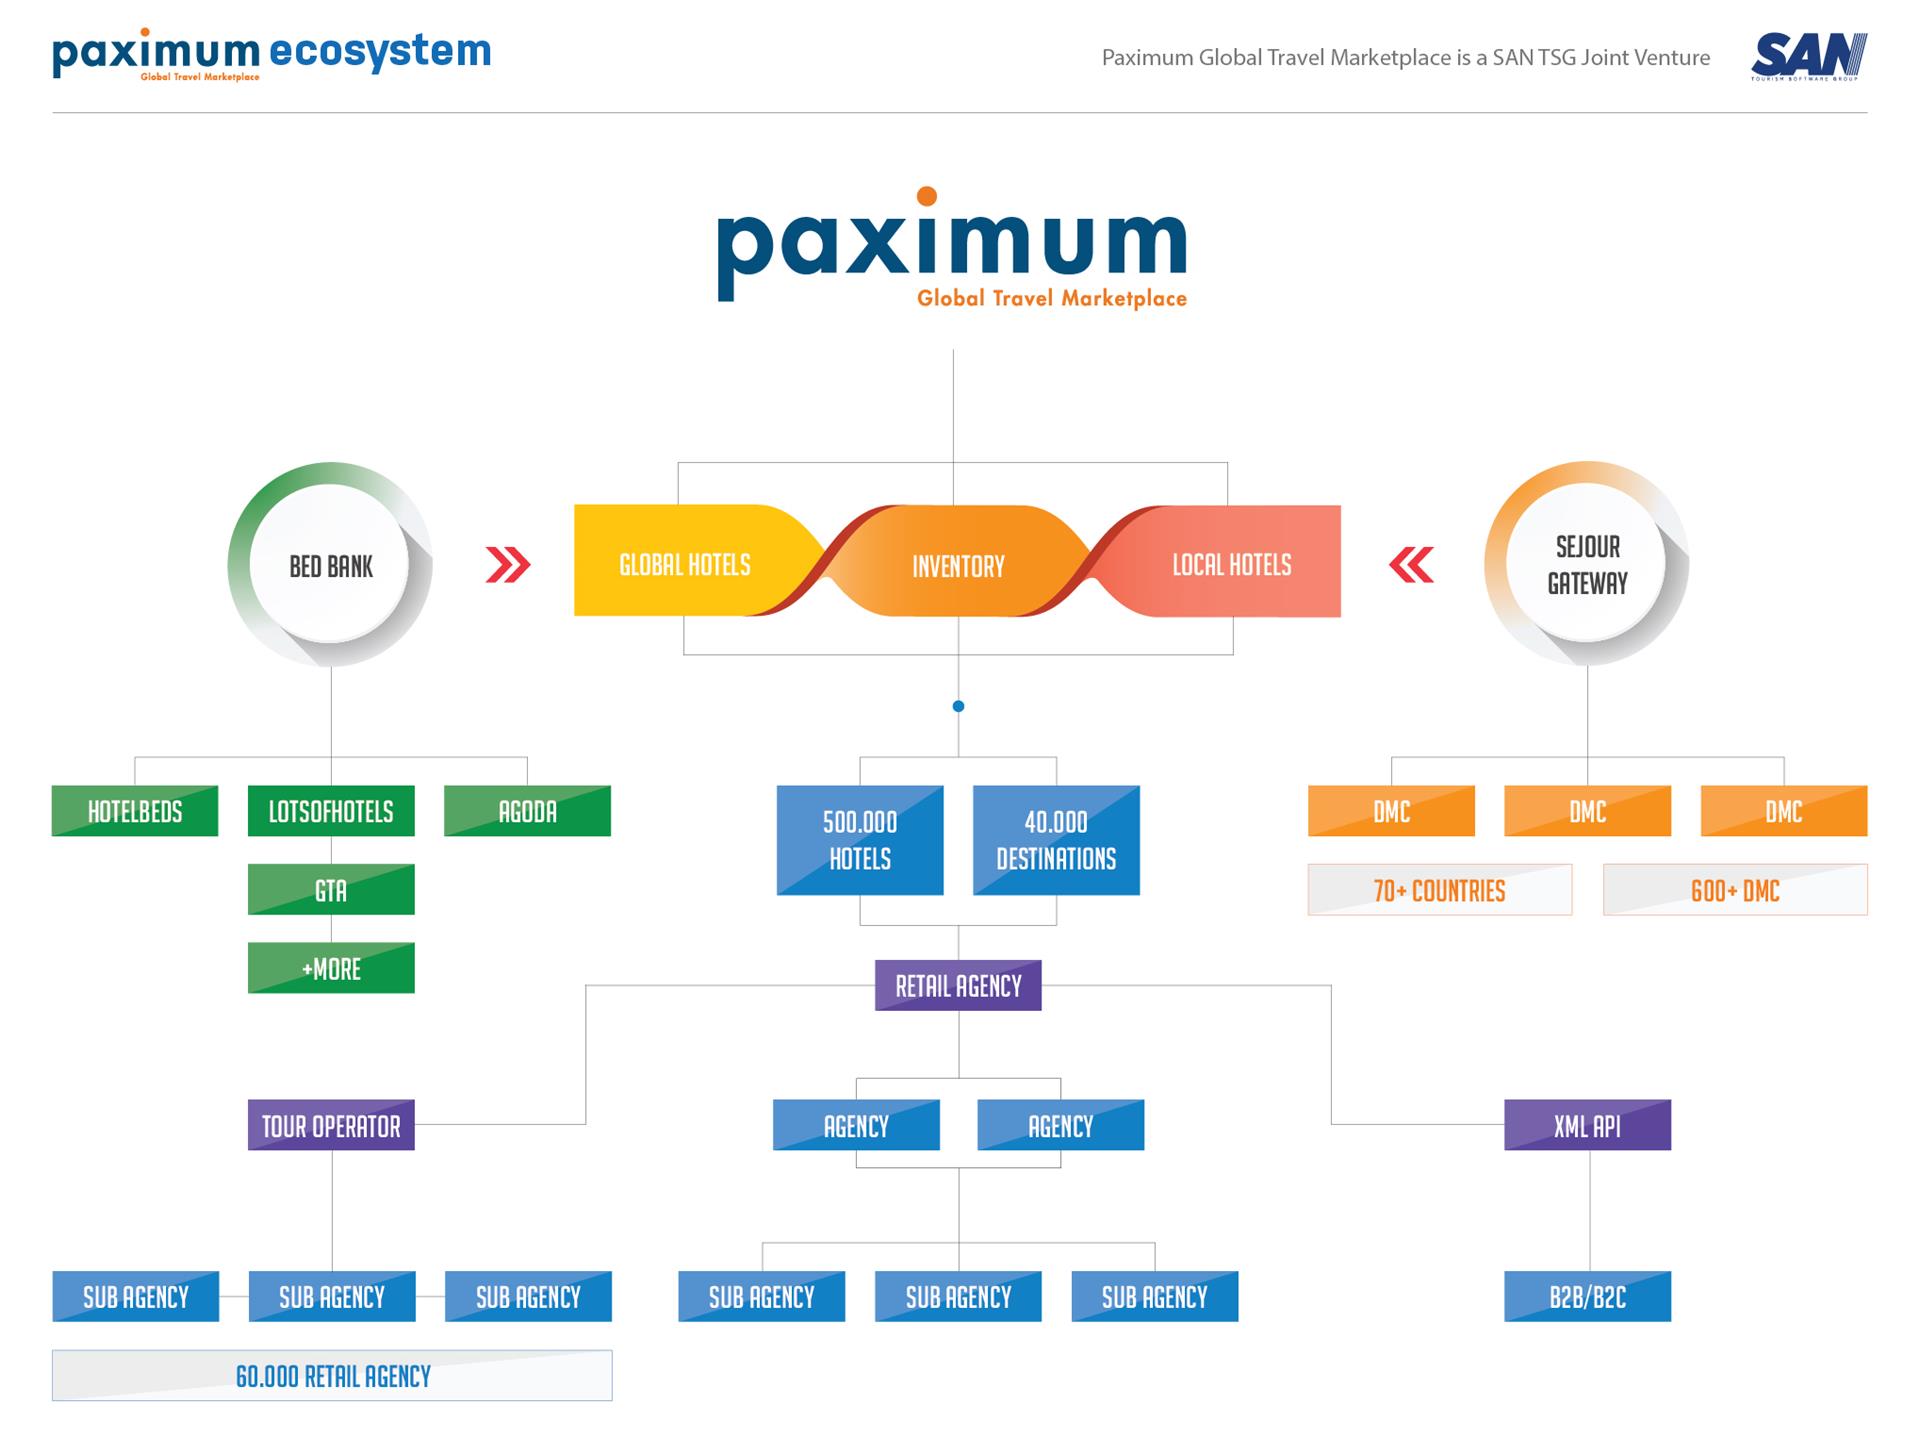 paximum ecosystem